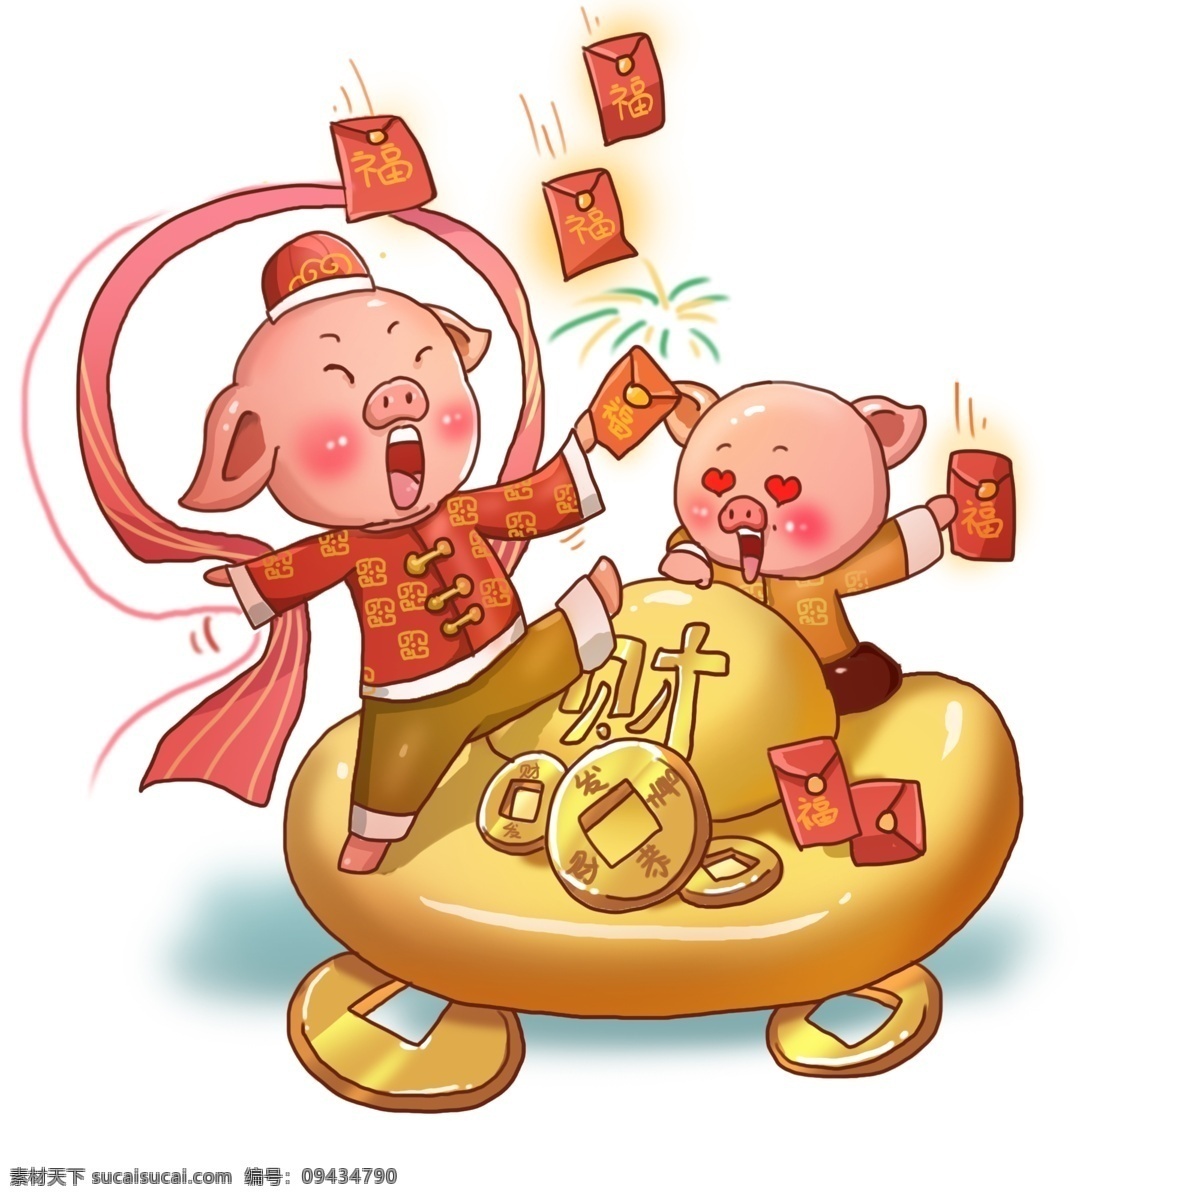 卡通 手绘 新年 小 福 猪 抢 红包 卡通小猪 新年快乐 新年祝贺 过新年 小猪 春节 猪年 过年 福猪 迎新春 可爱小猪 新年小猪 抢红包